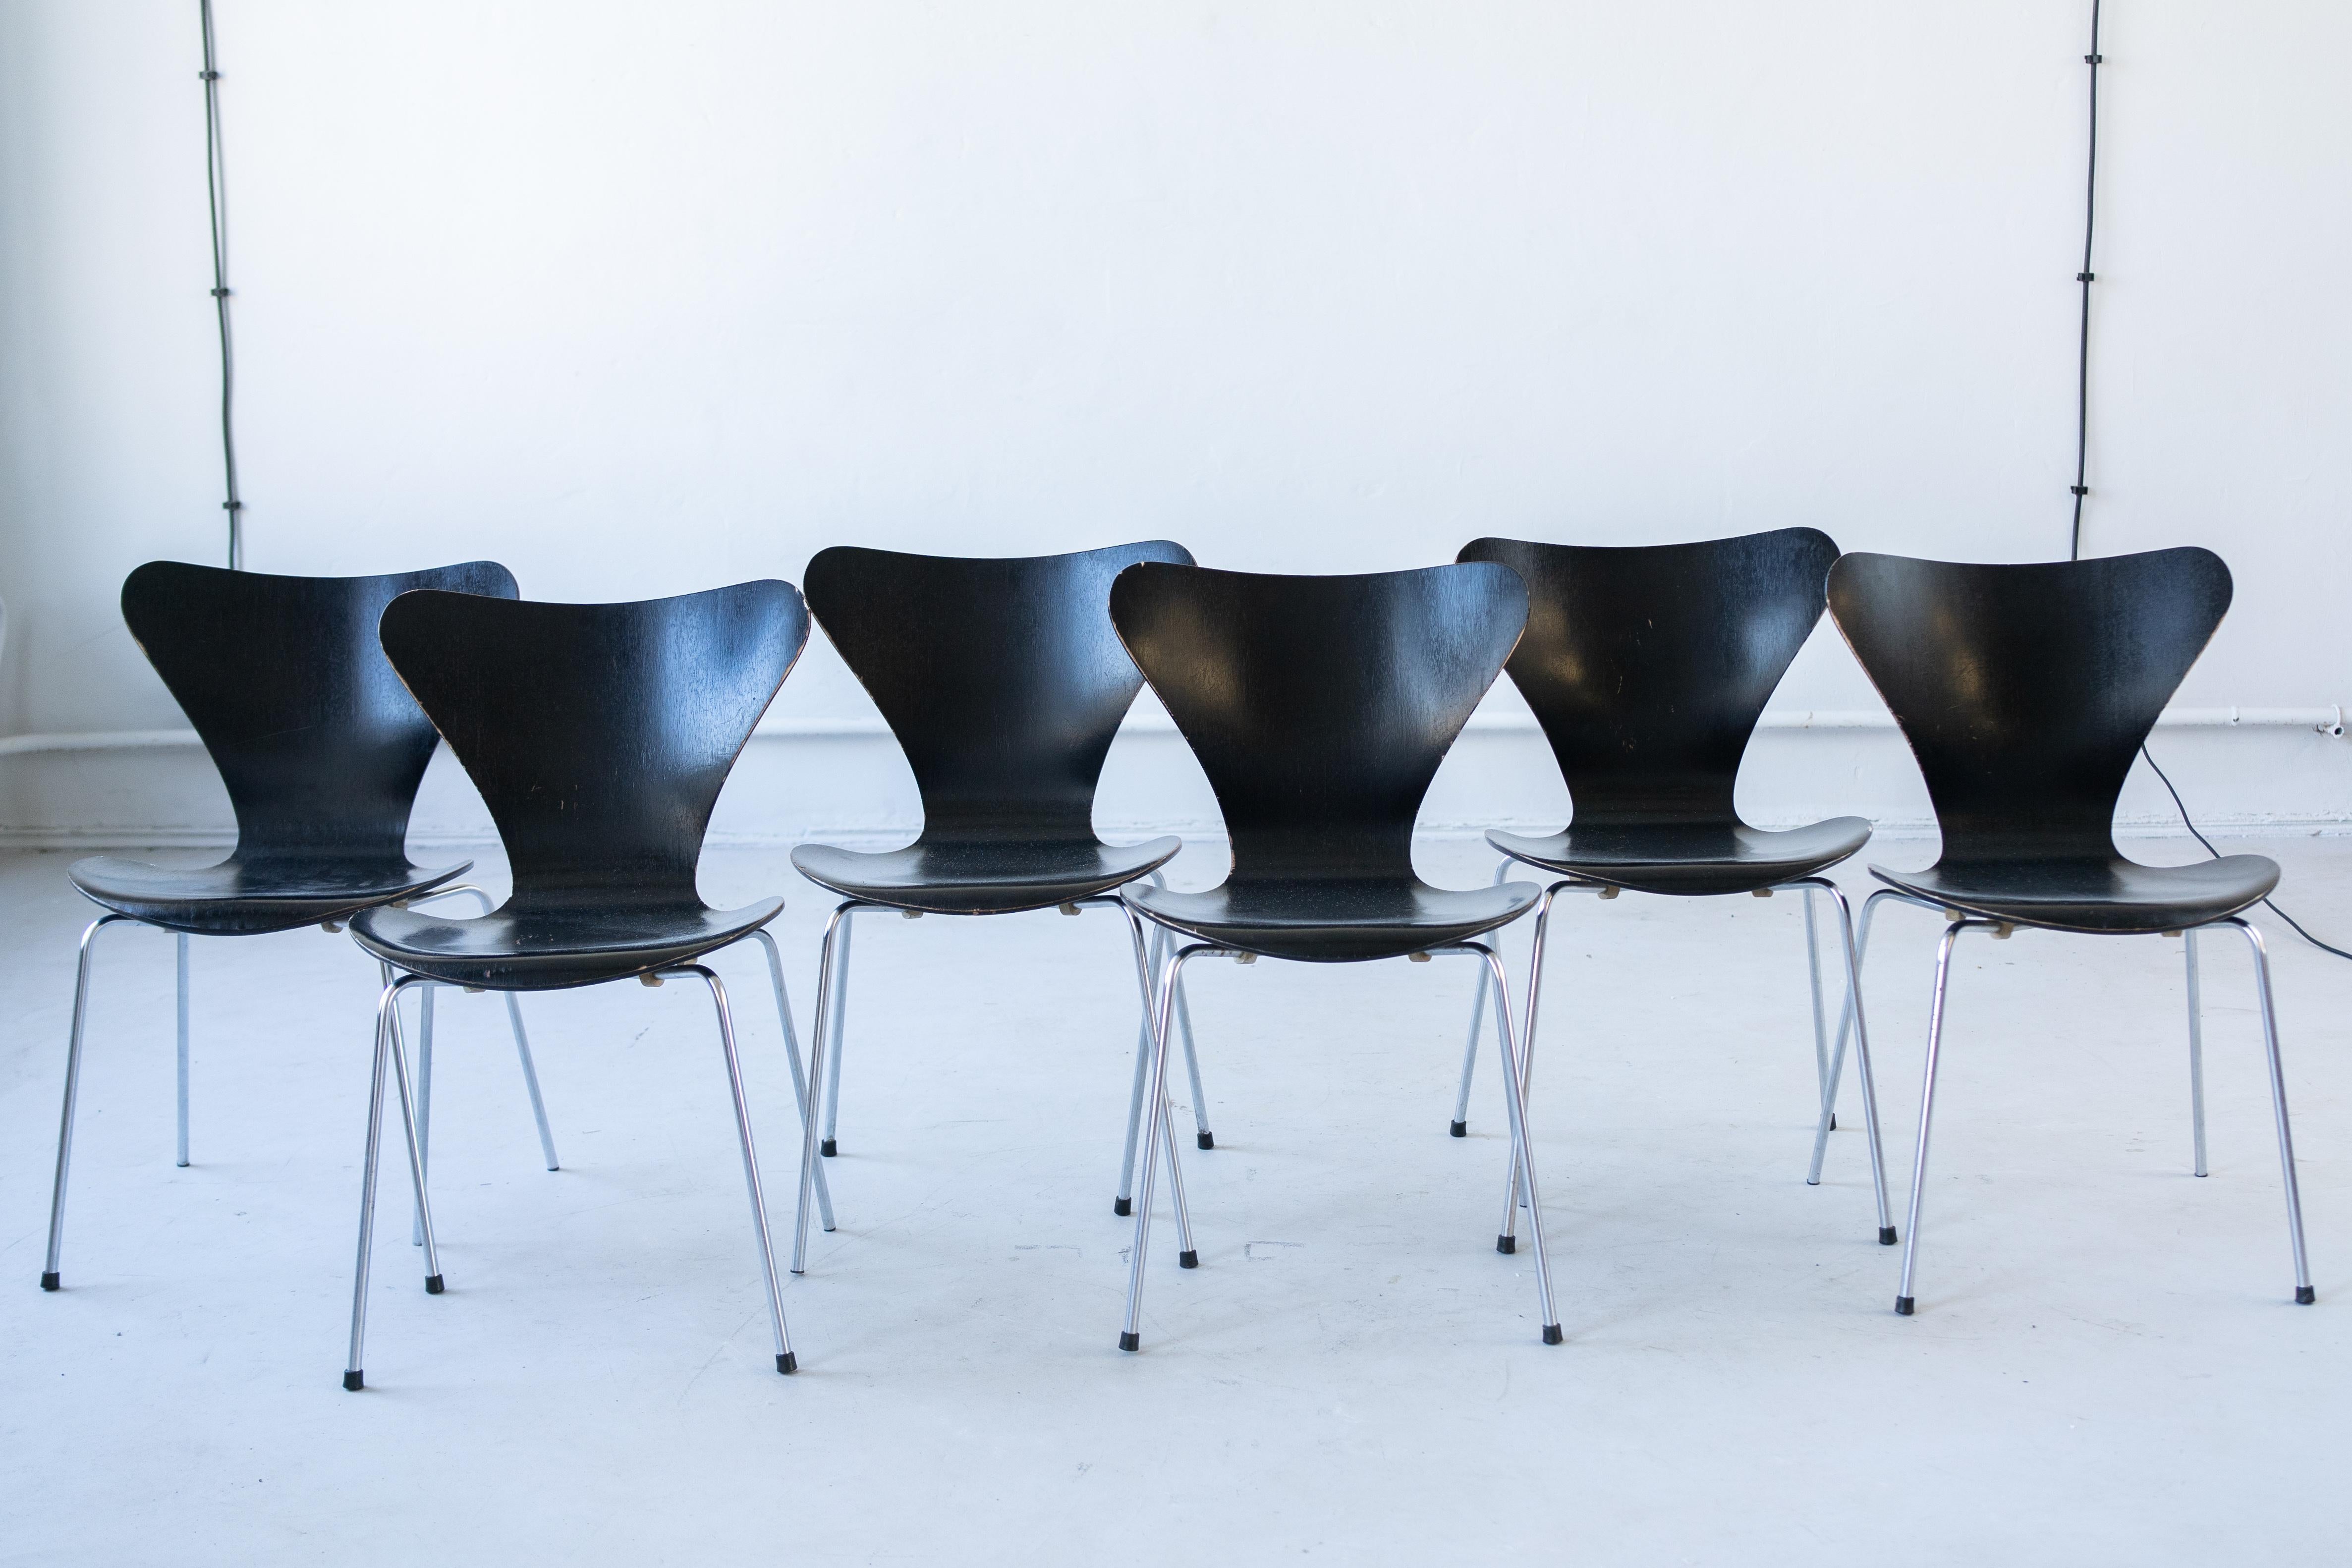 Chaises danoises série 7  conçu par Erne Jacobsen en 1955, produit par Fritz Hansen, 
Très polyvalent, lignes épurées,.
 Grâce à la technique spéciale utilisée par le fabricant, cette chaise est très flexible, solide et durable. 
Facile à